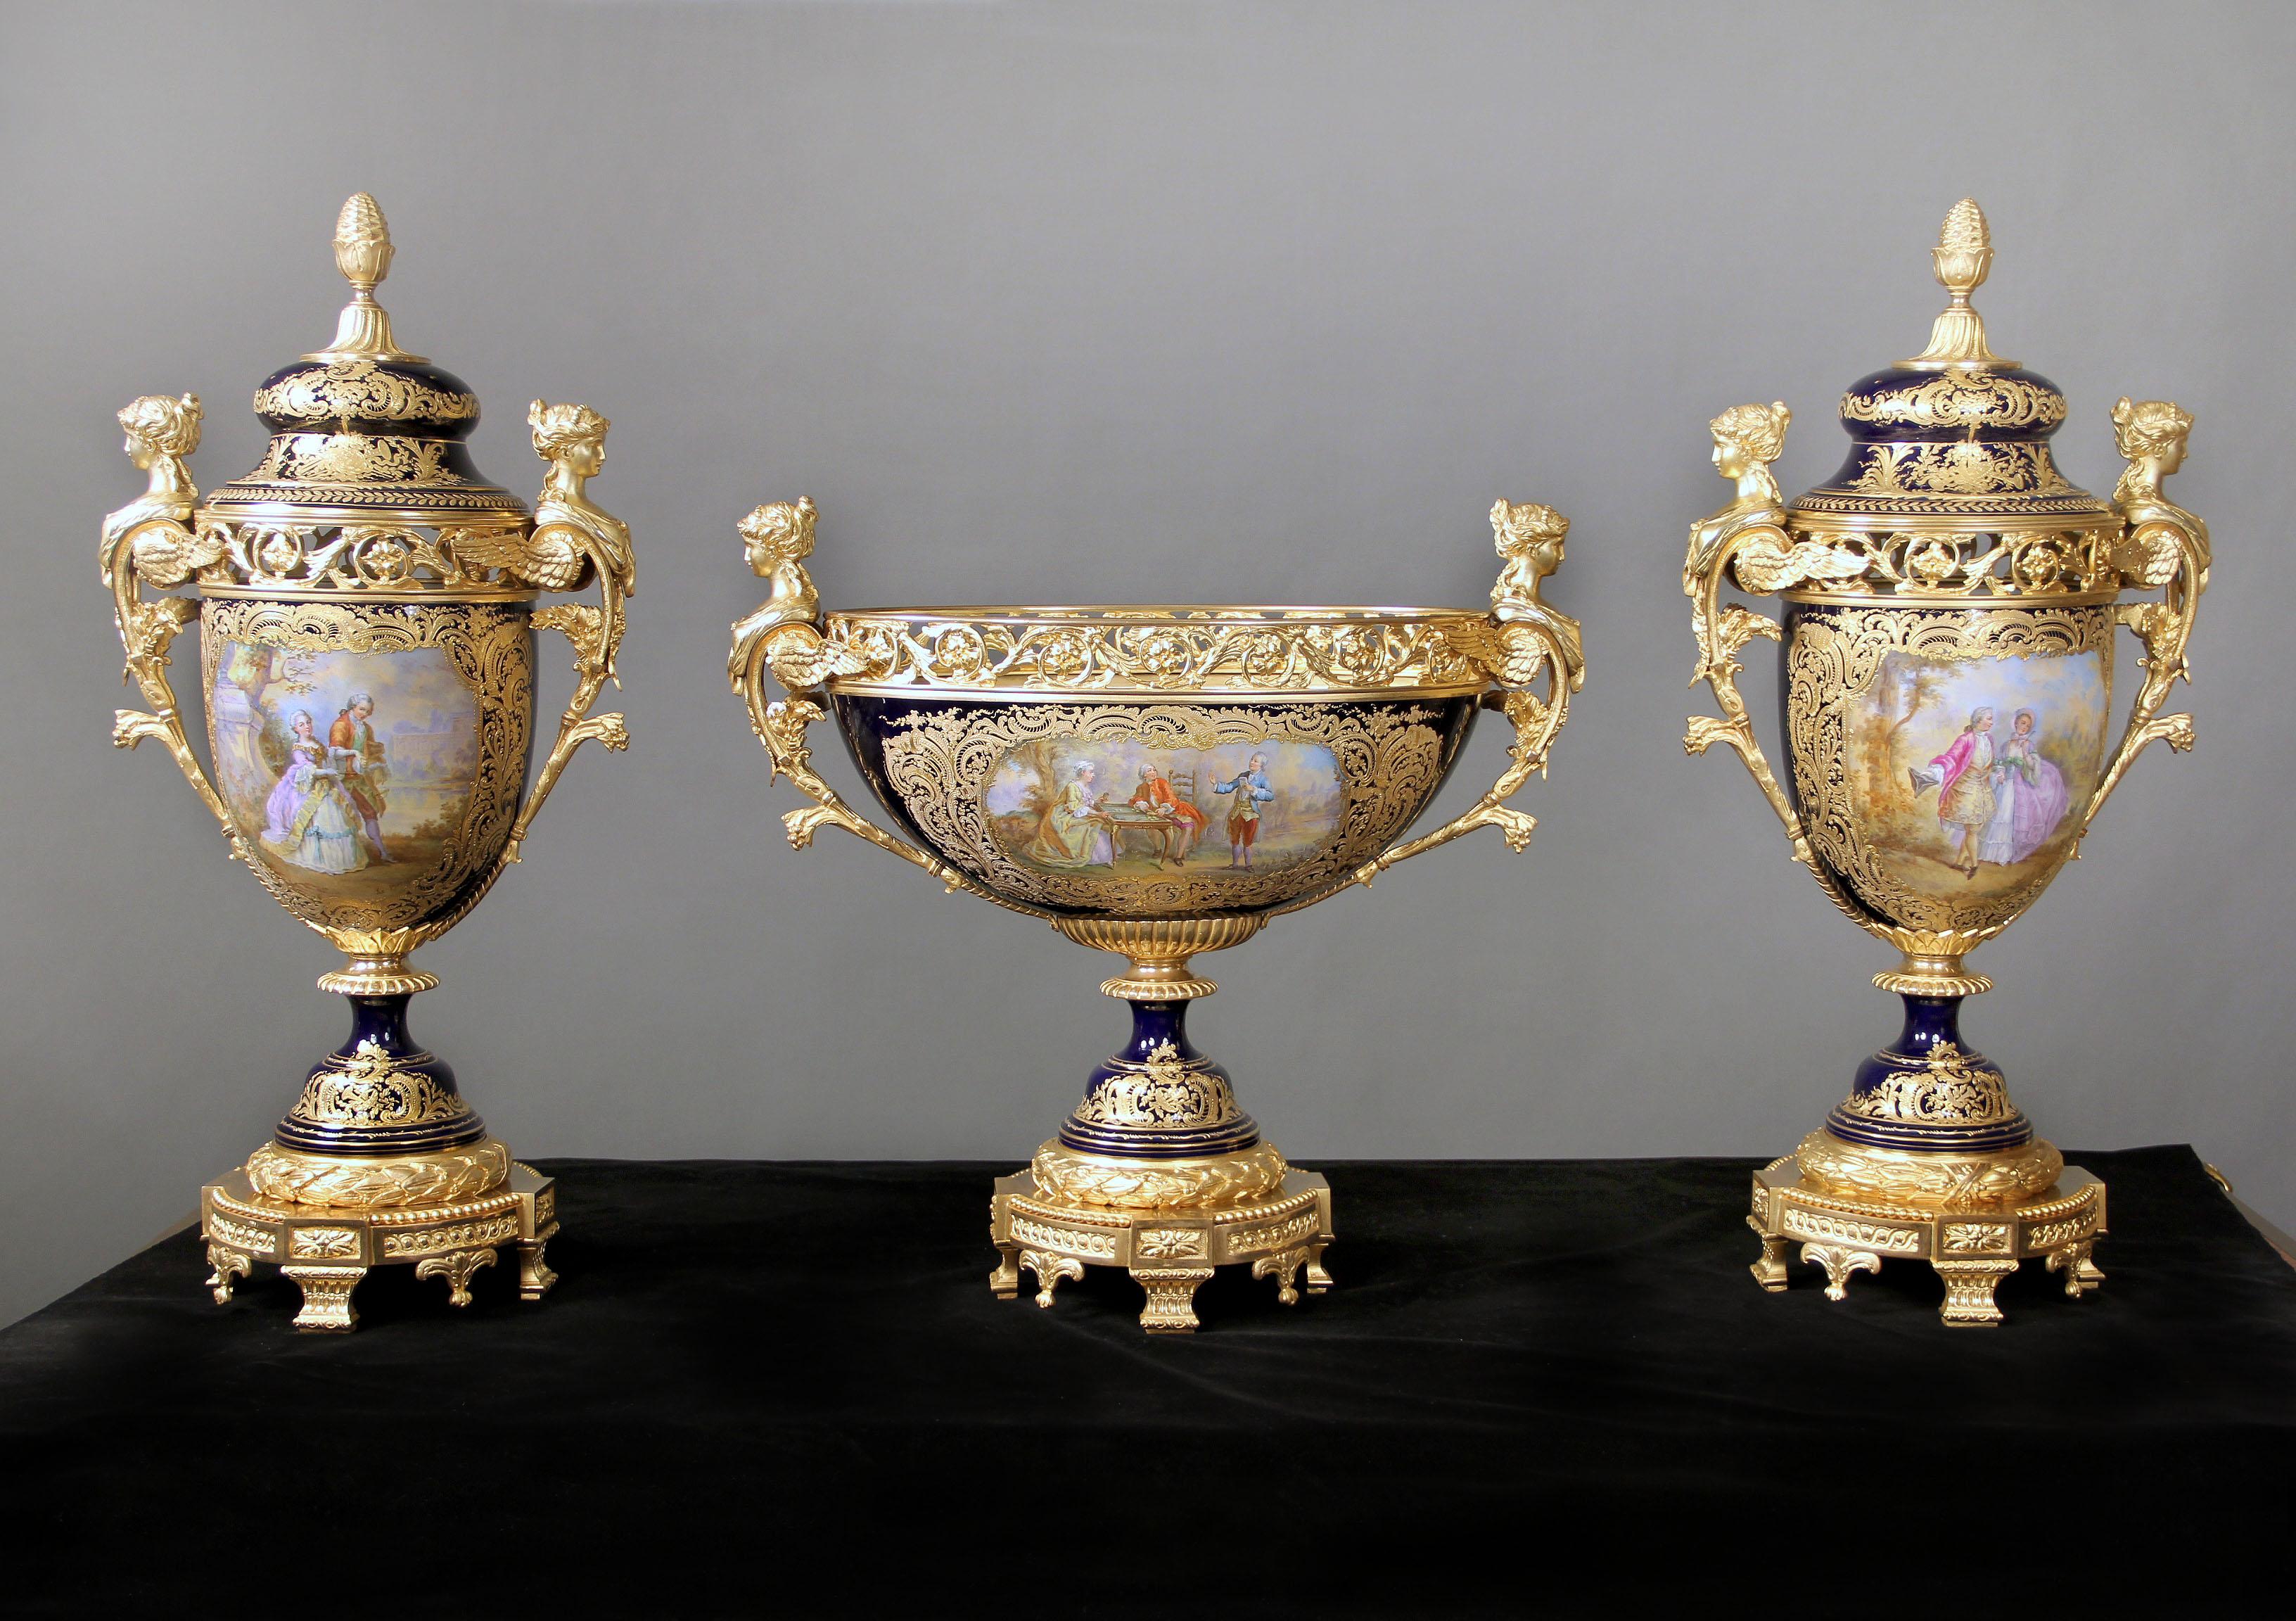 Une très impressionnante garniture de trois pièces en porcelaine de style Sèvres de la fin du XIXe siècle, en bronze doré et bleu cobalt. 

L'impressionnante pièce centrale présente une bordure perforée représentant des feuillages en bronze doré